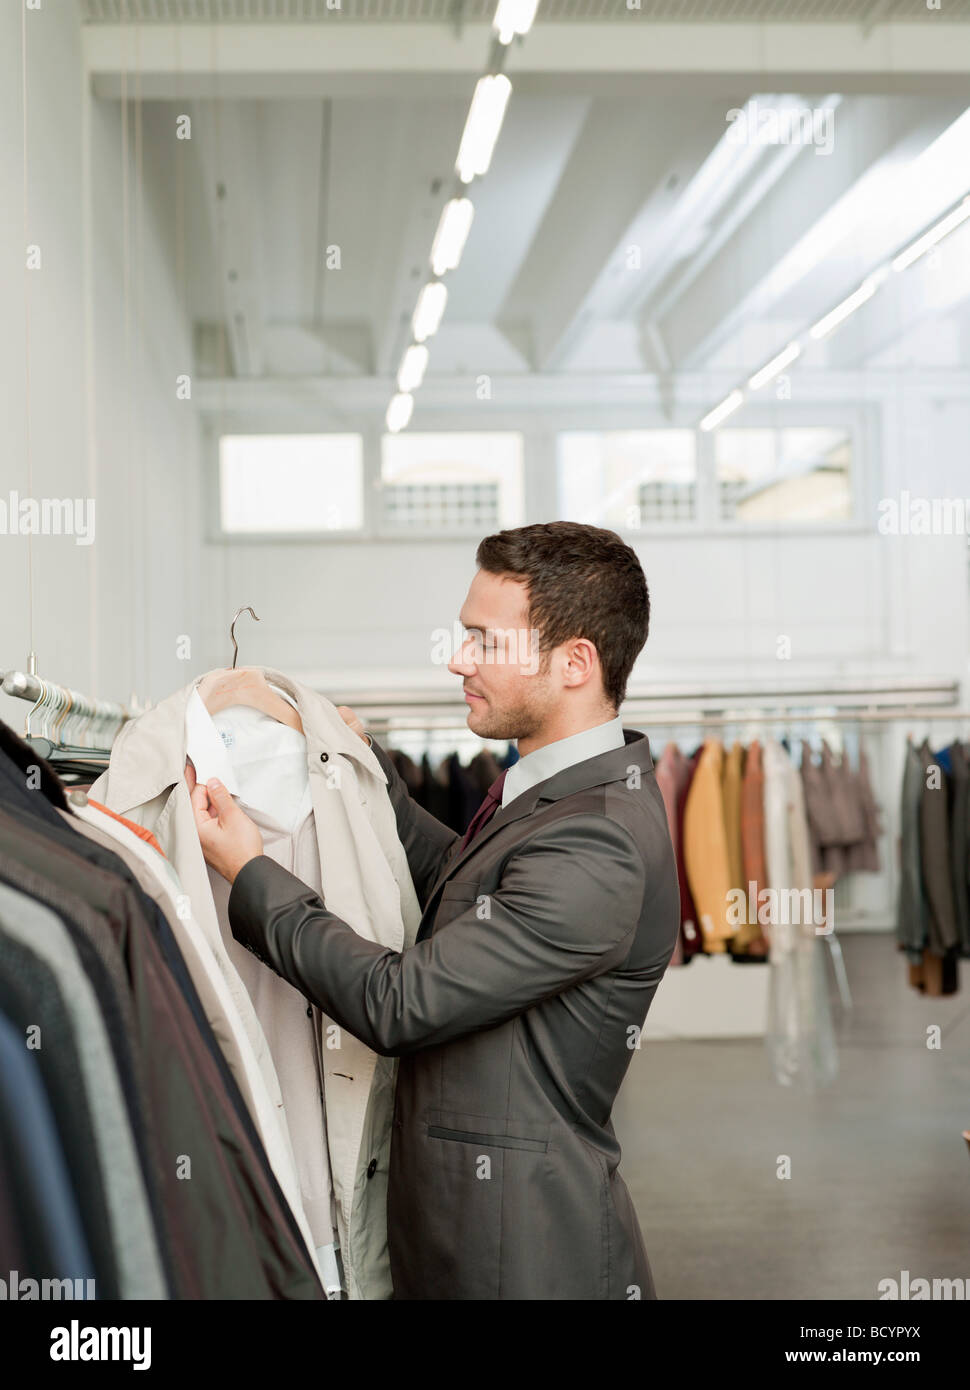 man shopping looking at jackets Stock Photo